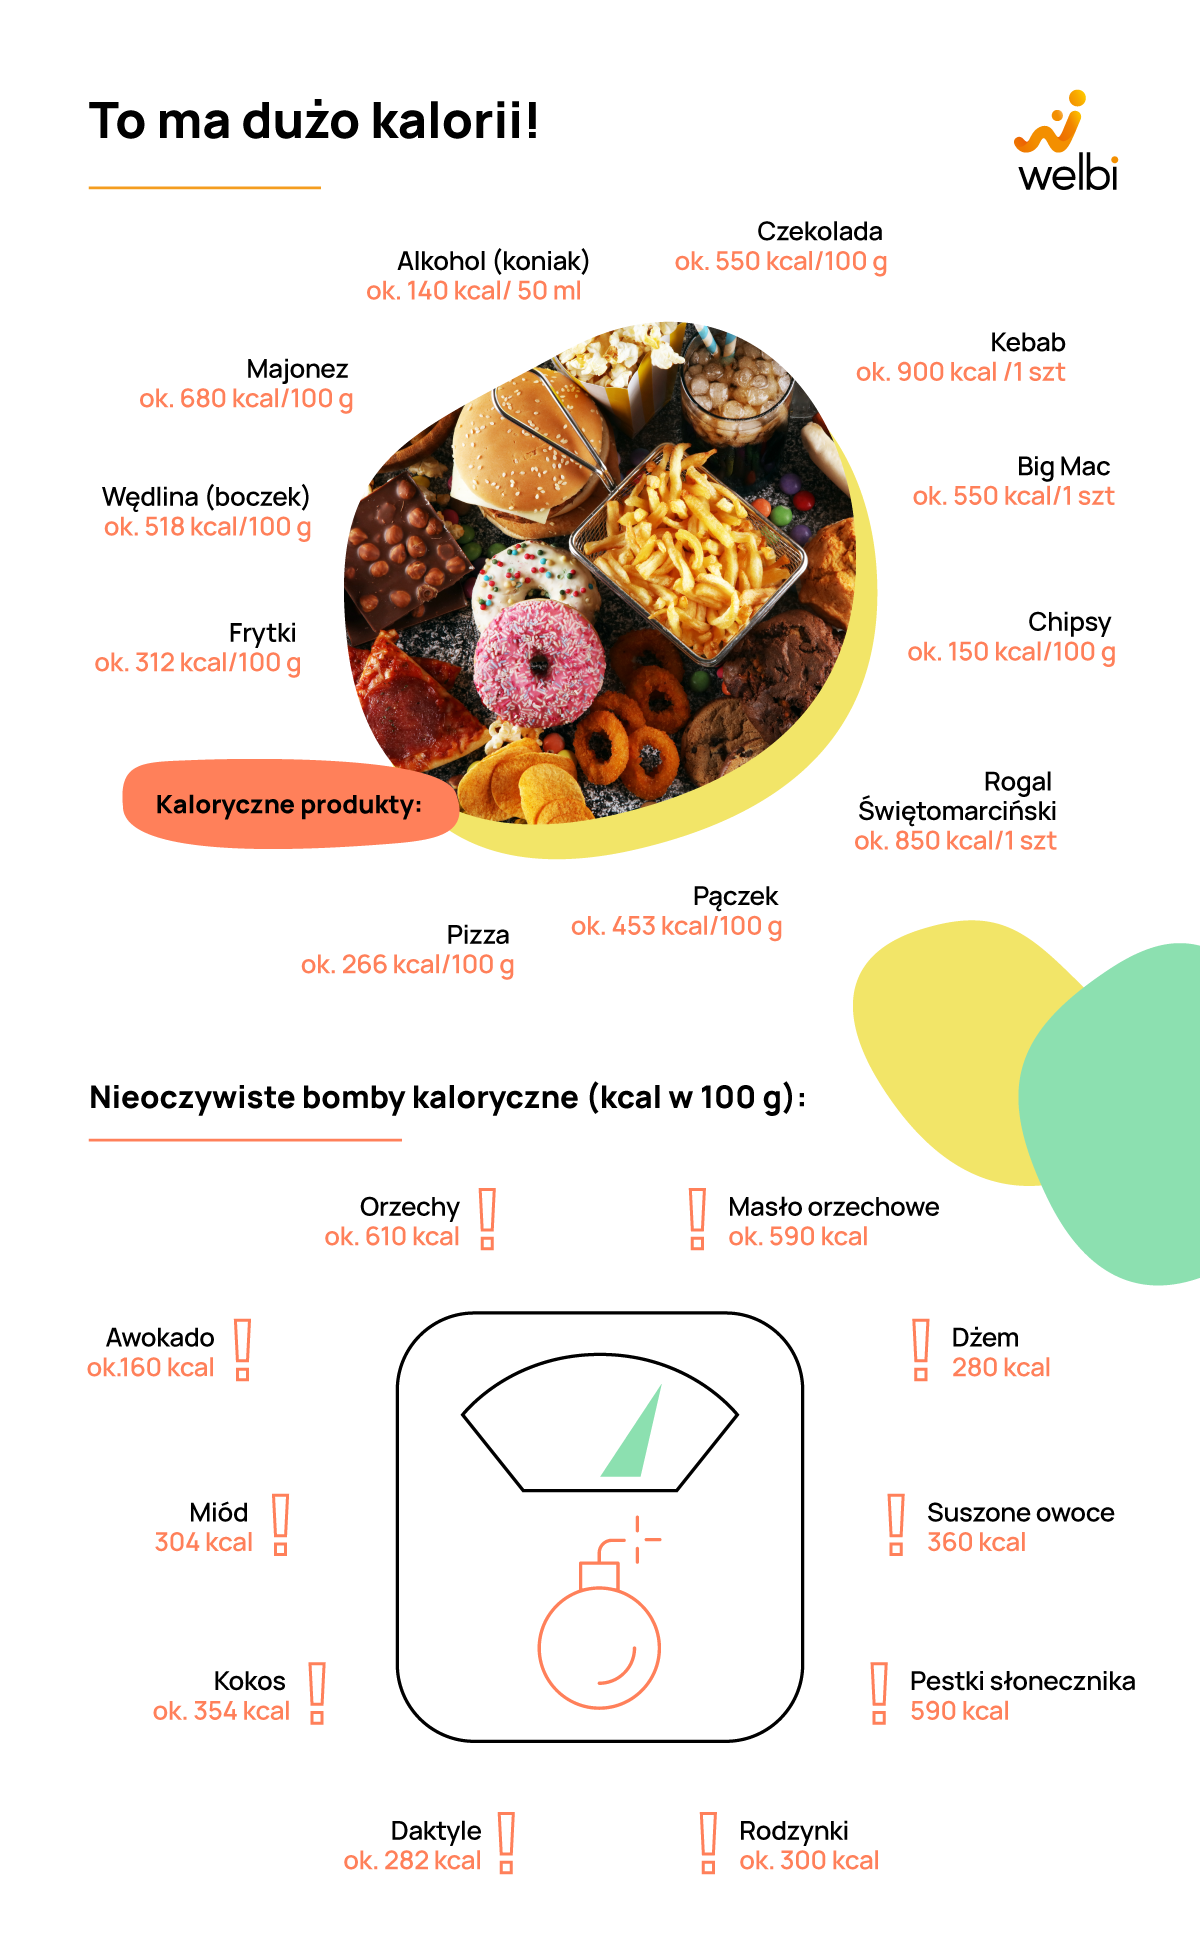 ile-kalorii-ma-jajko-kaloryczne-produkty-infografika-welbi